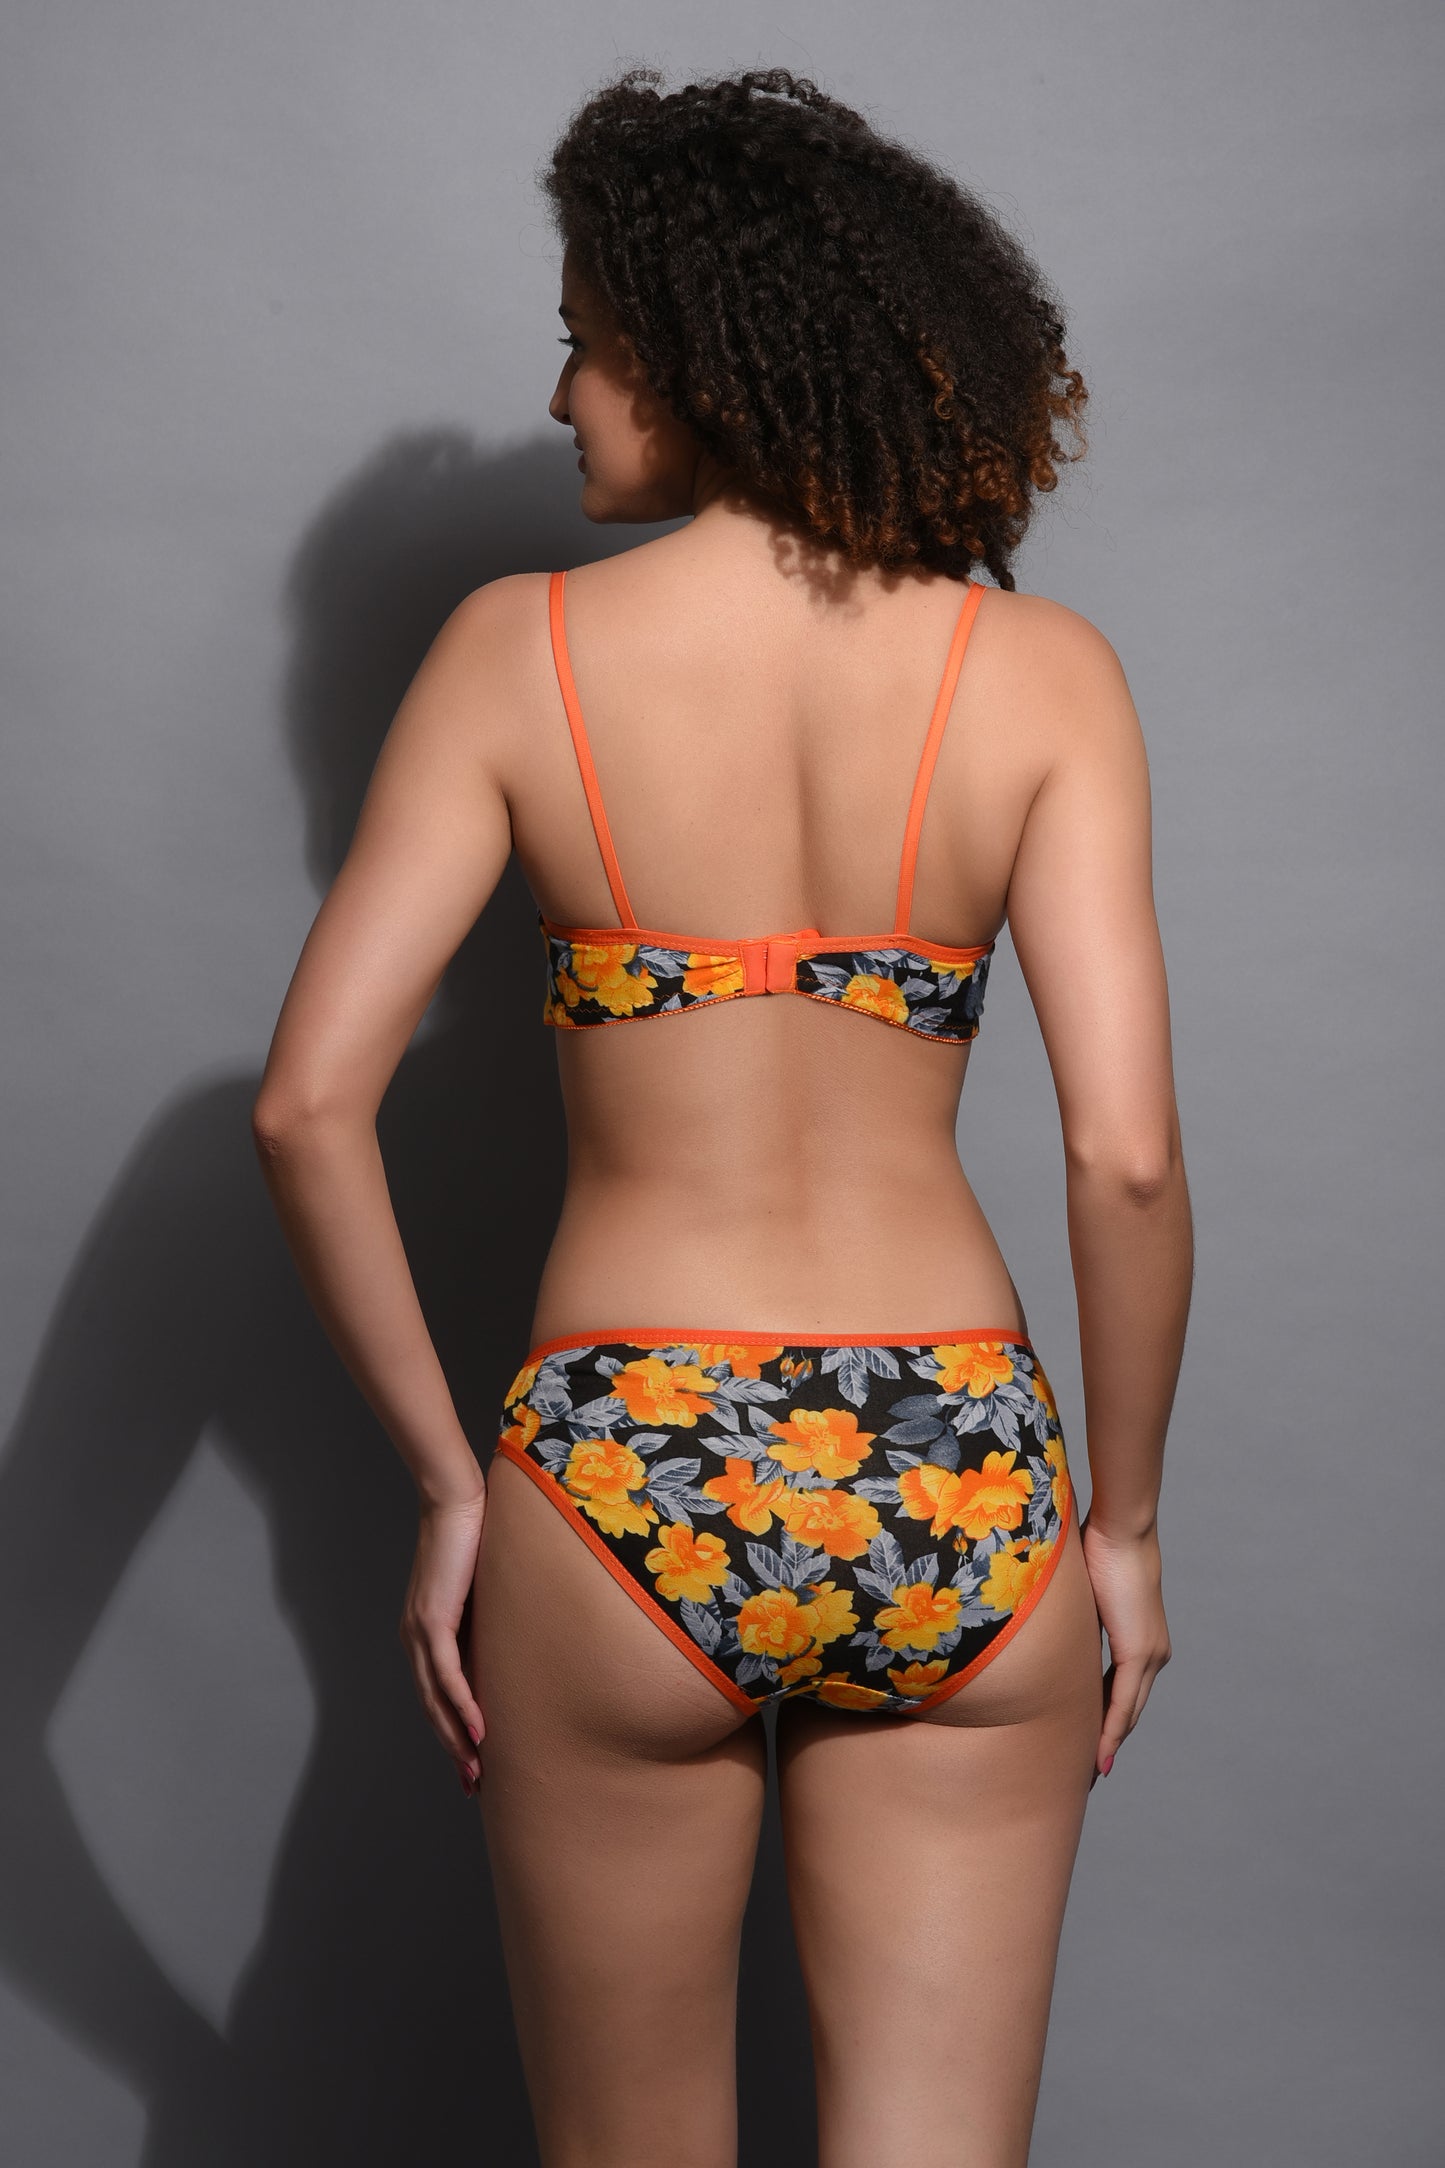 Chia Fashions Sun Flower Print Bra Panty Lingerie Set.